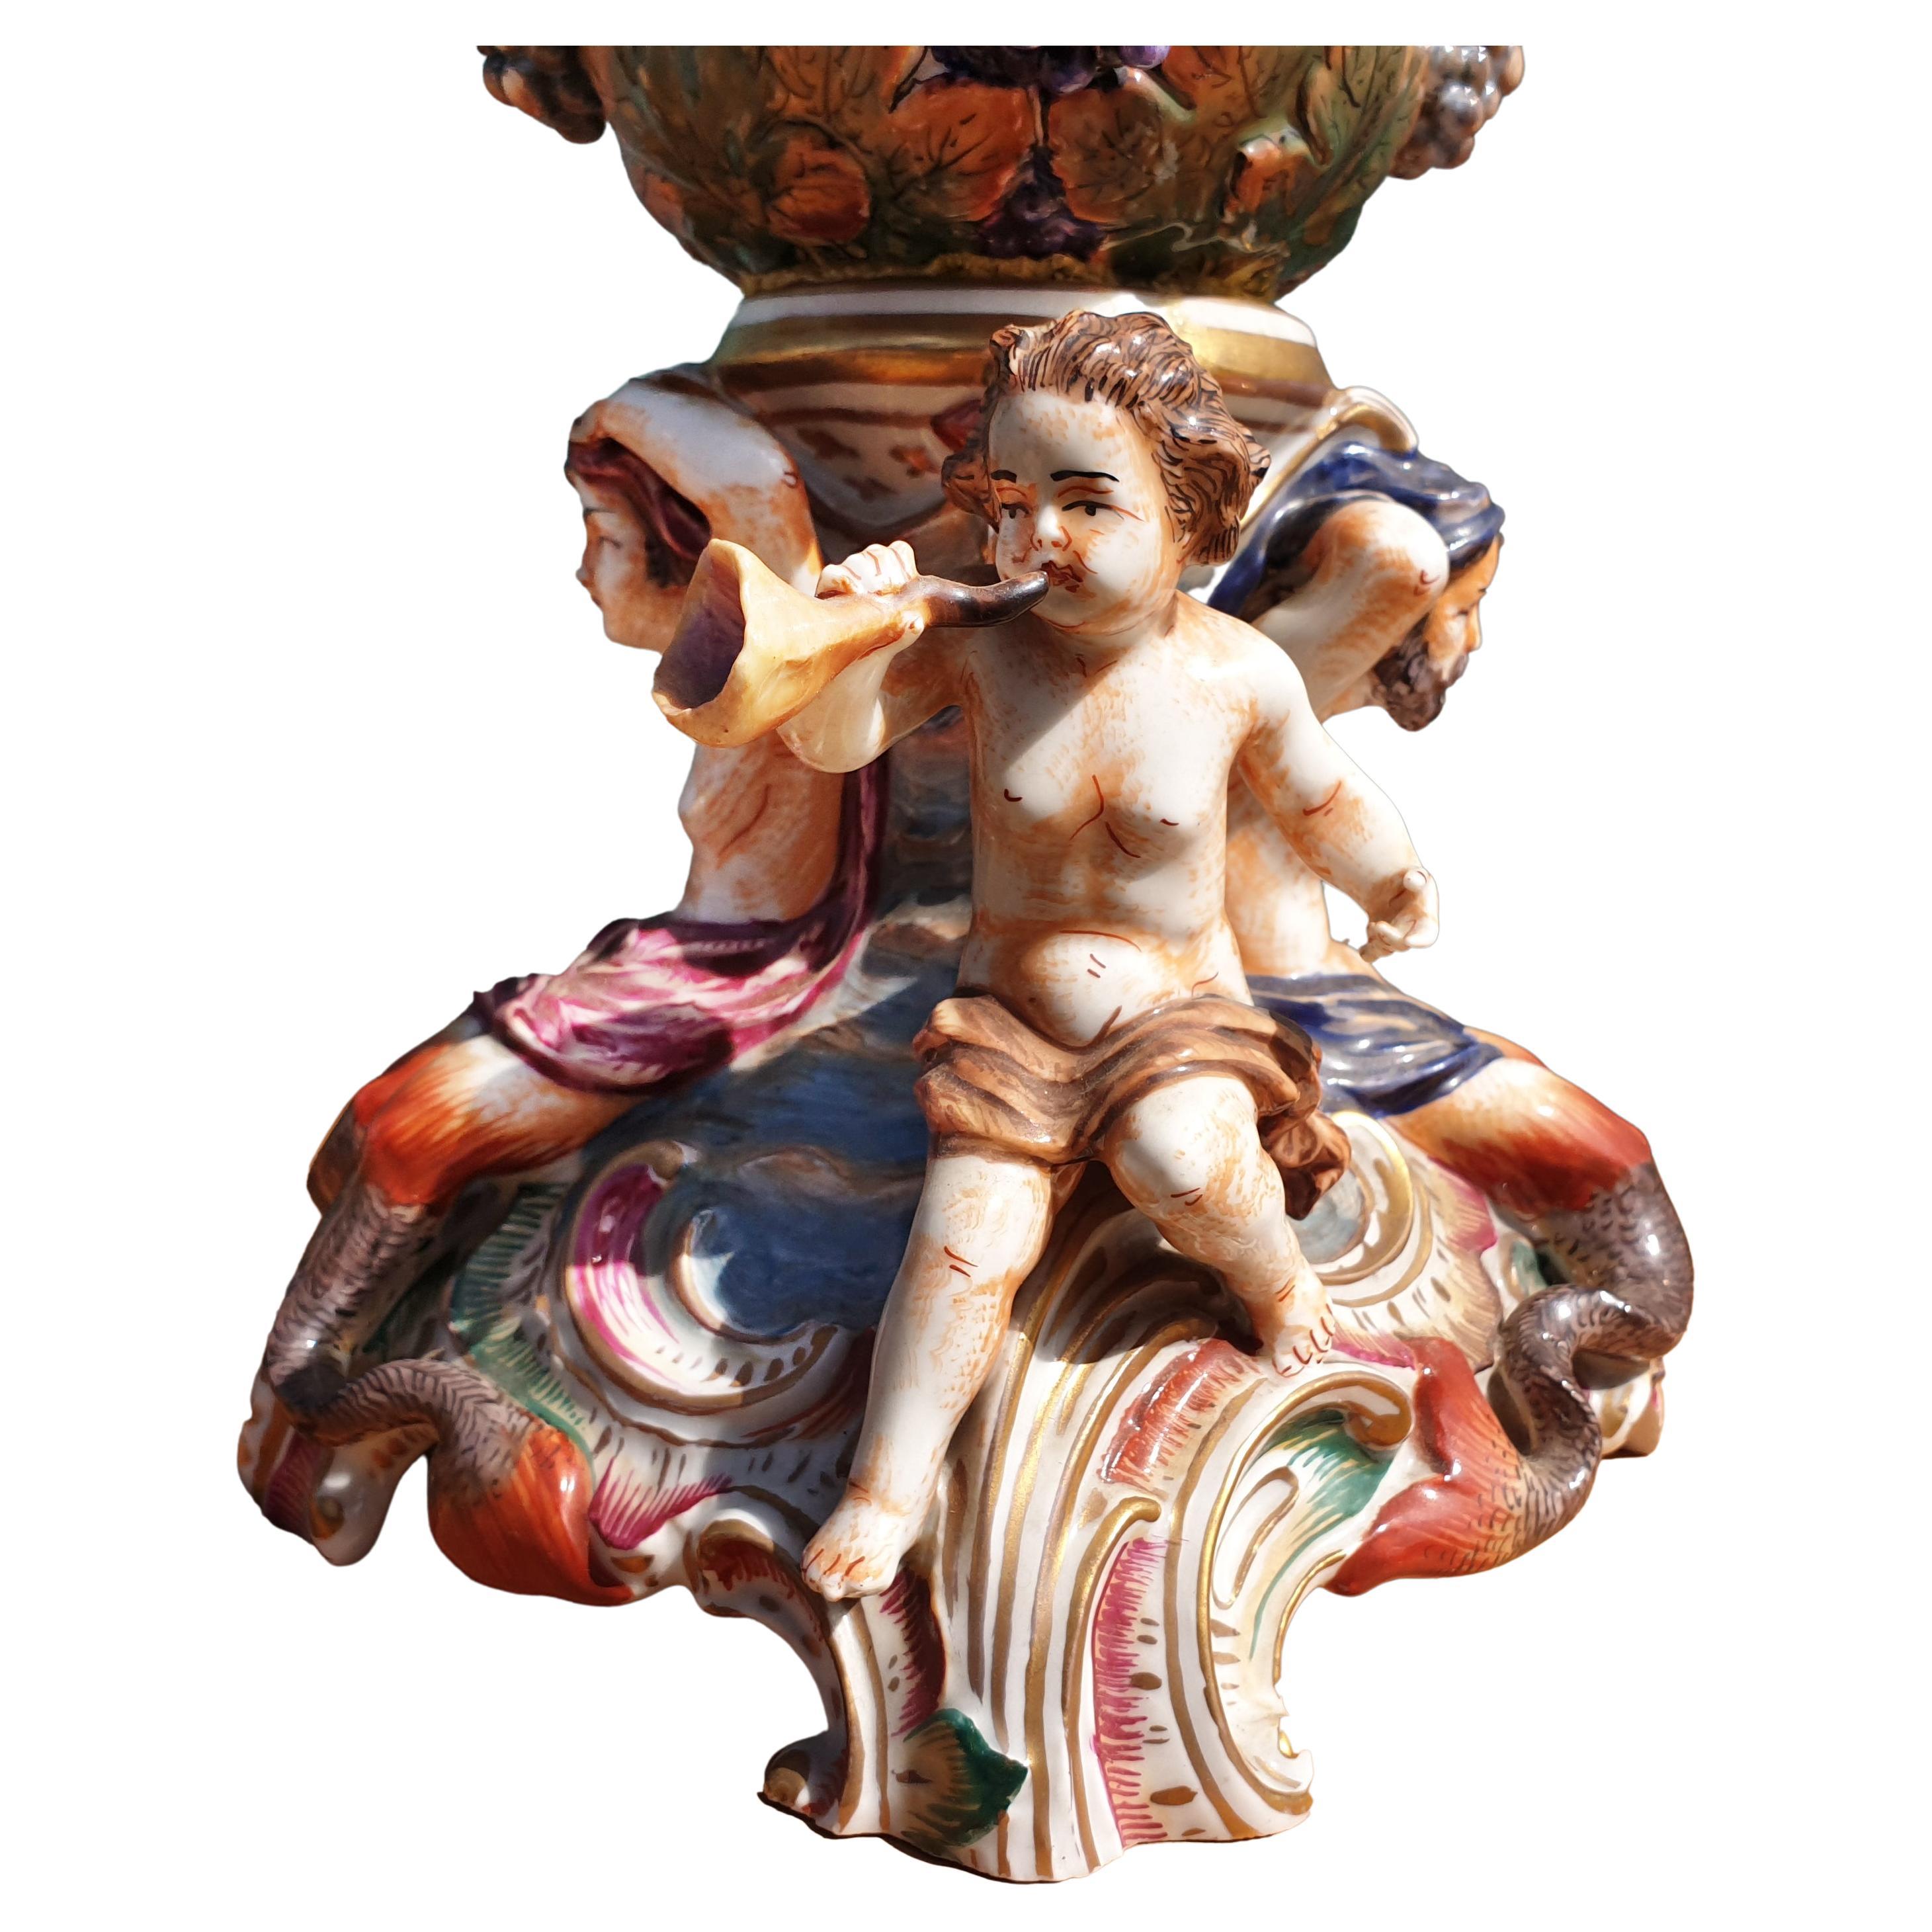 Un impressionnant vase de Capodimonte représentant des personnages, des fleurs et des feuilles dans un travail en relief très fin. Le vase artisanal est peint à la main dans des couleurs vives et est partiellement doré. Le vase est orné de deux